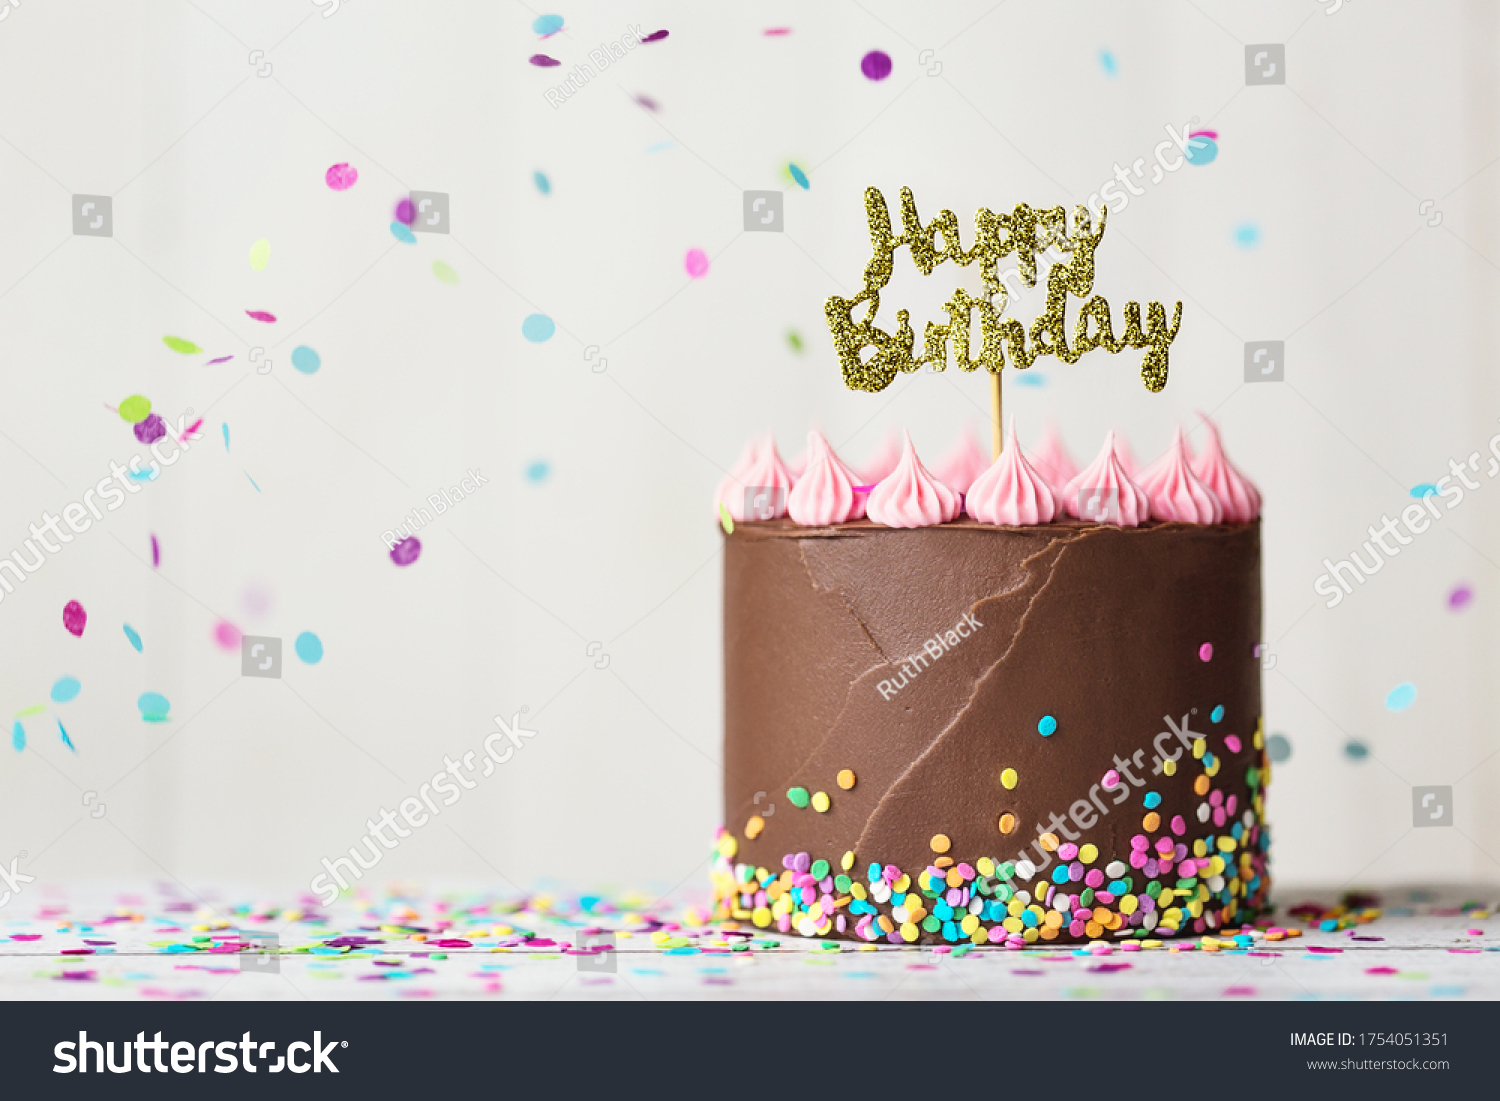 presentation of birthday cake